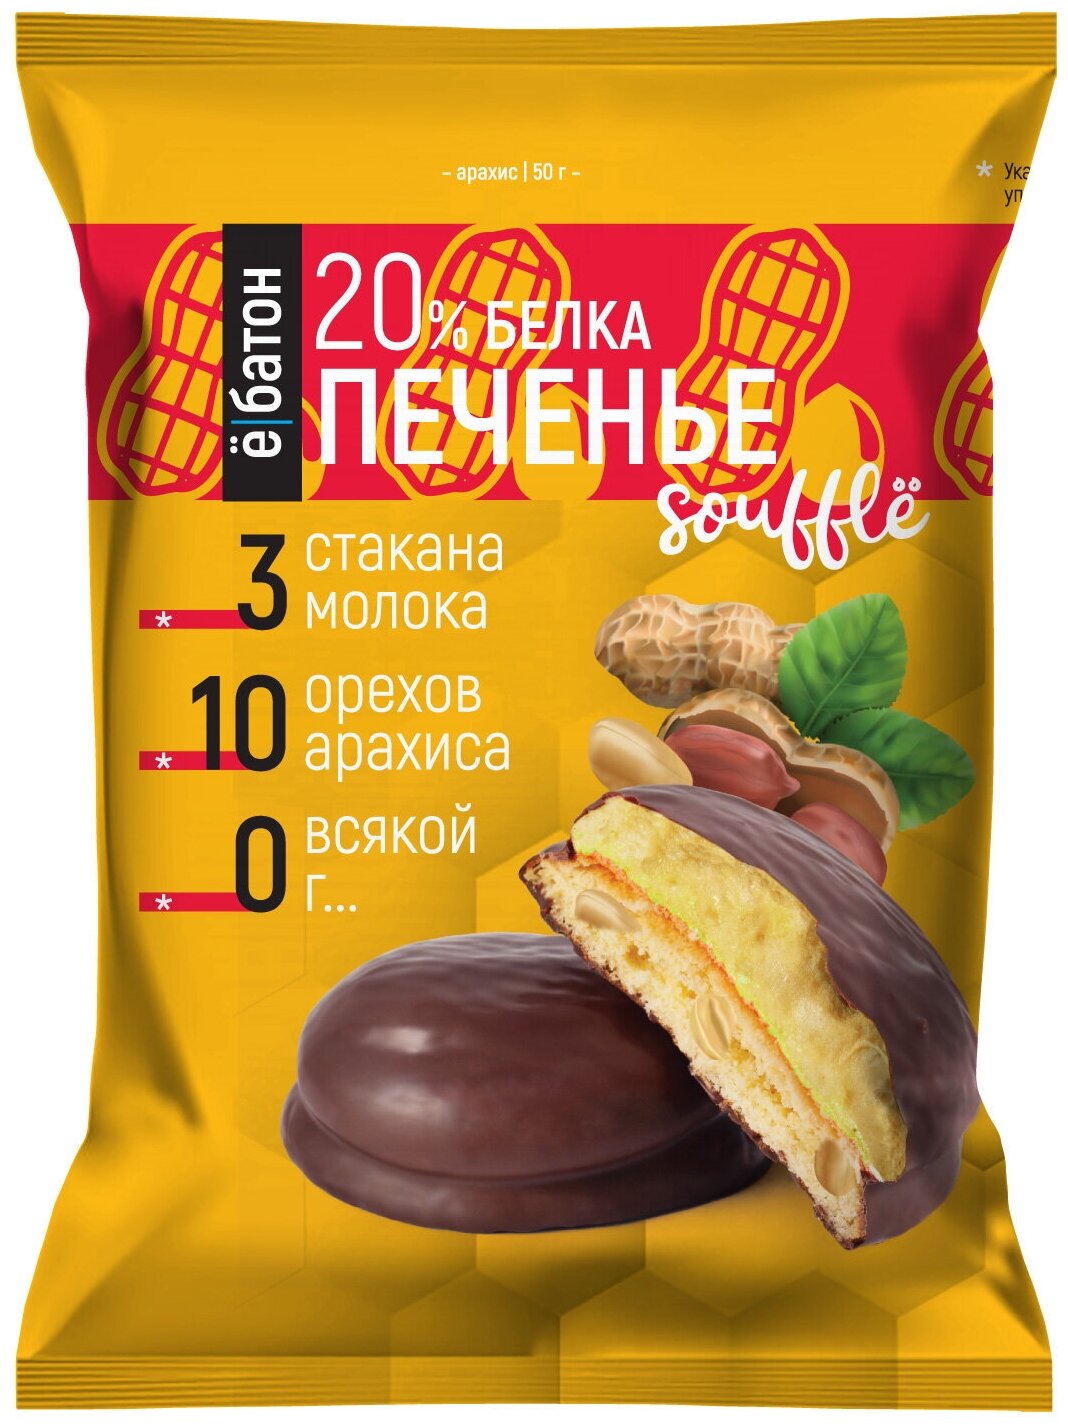 Протеиновое печенье "ё/батон" с белковым суфле 20% белка, с арахисом, 50гр., 9шт — купить по выгодной цене на Яндекс.Маркете